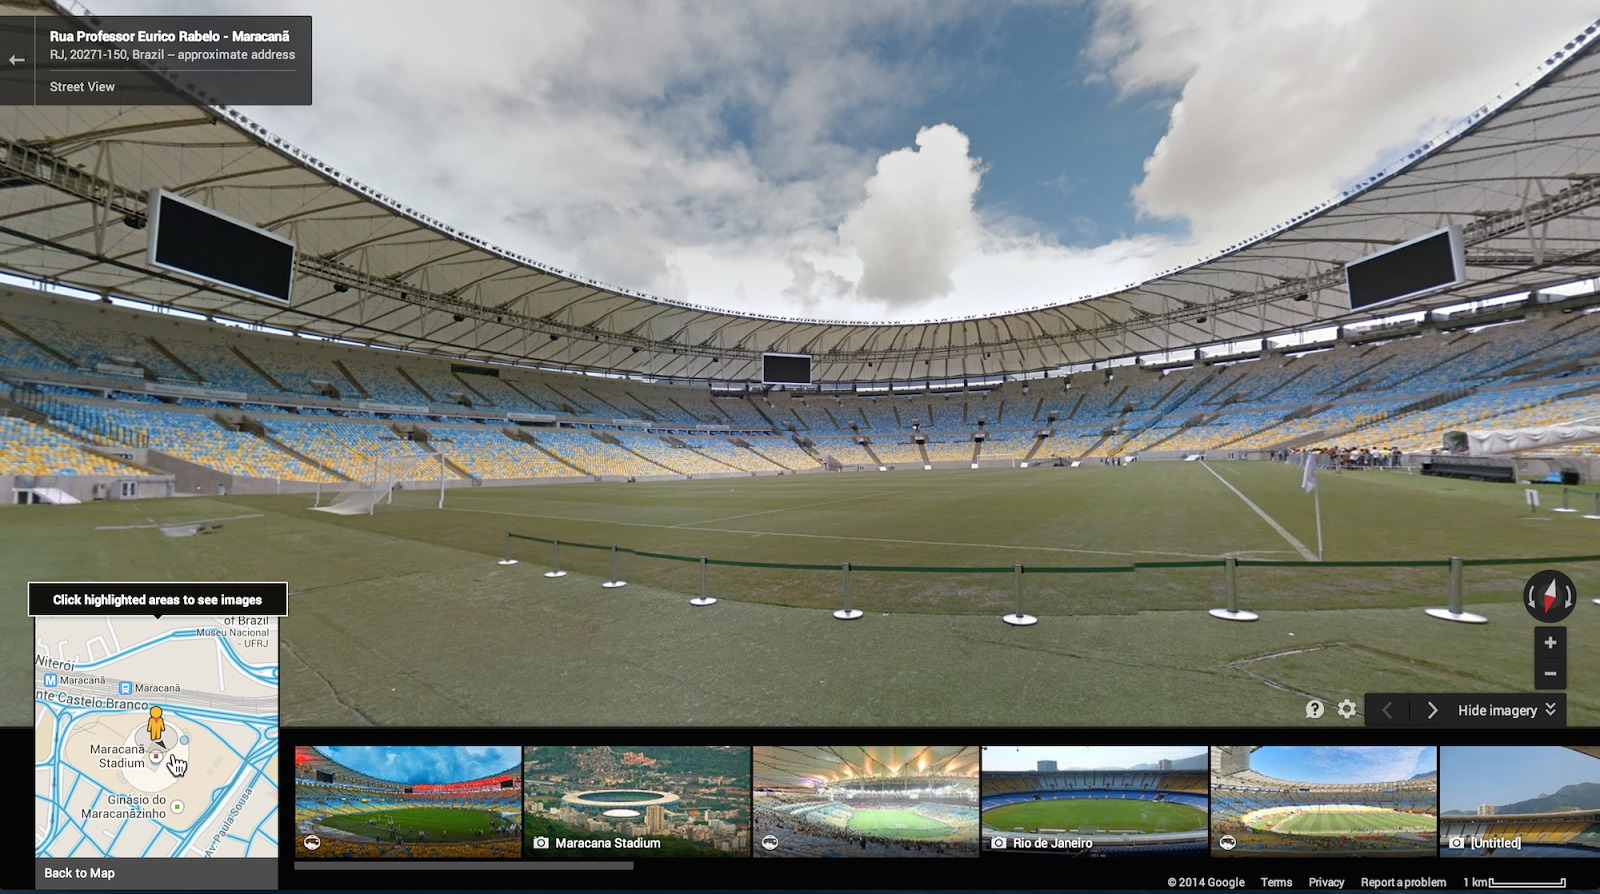 world-cup-brazil-12-stadiun-di-google-map-street-view--match-plan-wallchart